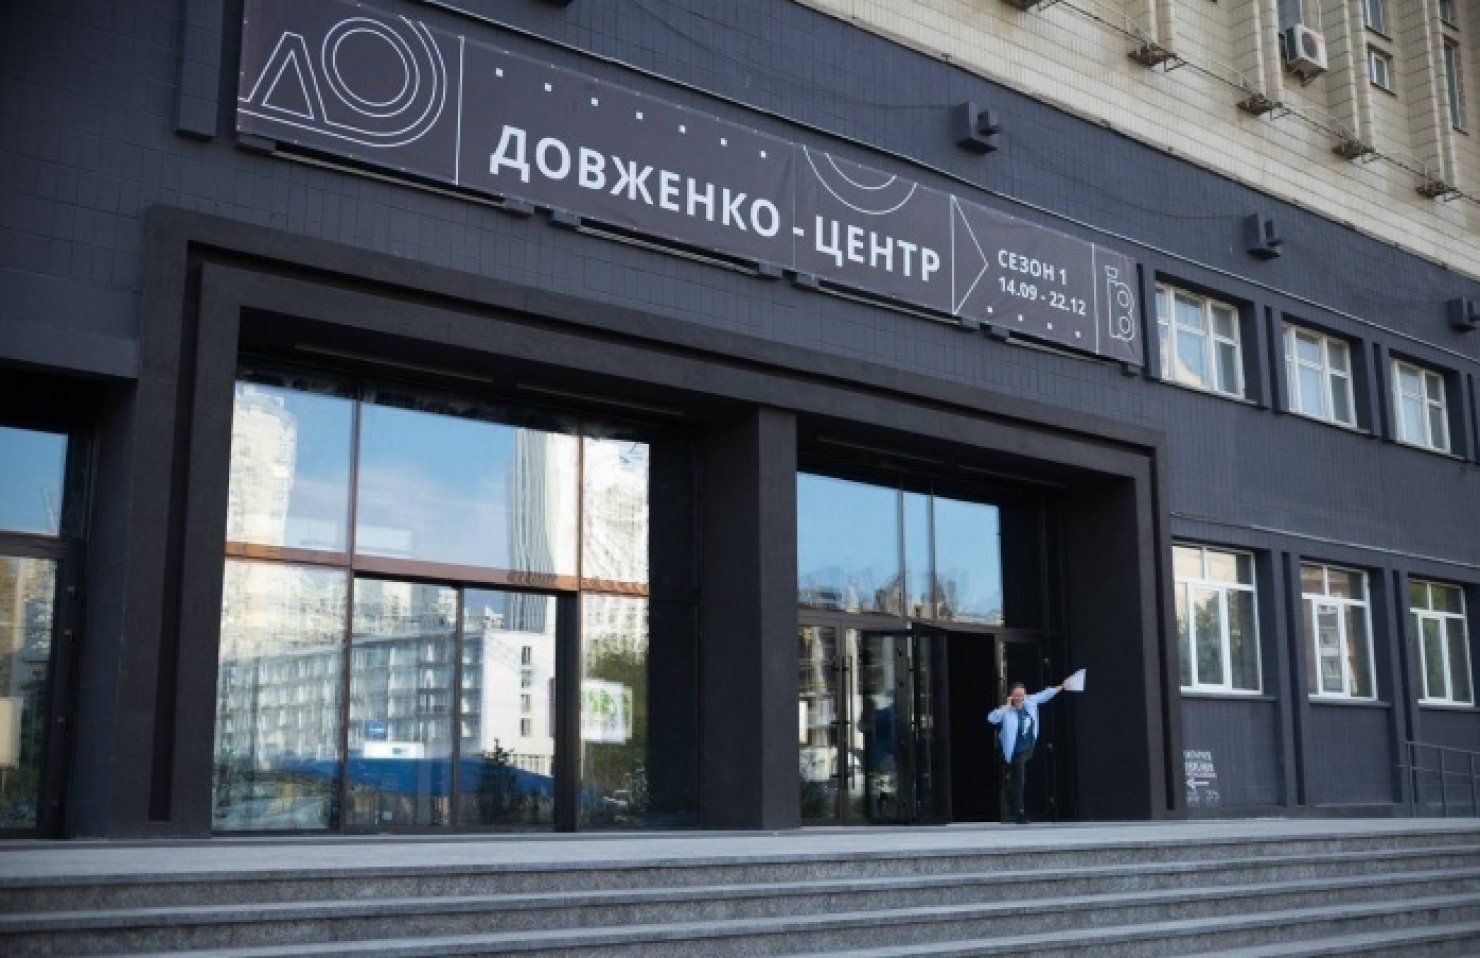 За добу петицію щодо скасування реорганізації Довженко -Центру підписало понад 2 тисячі осіб